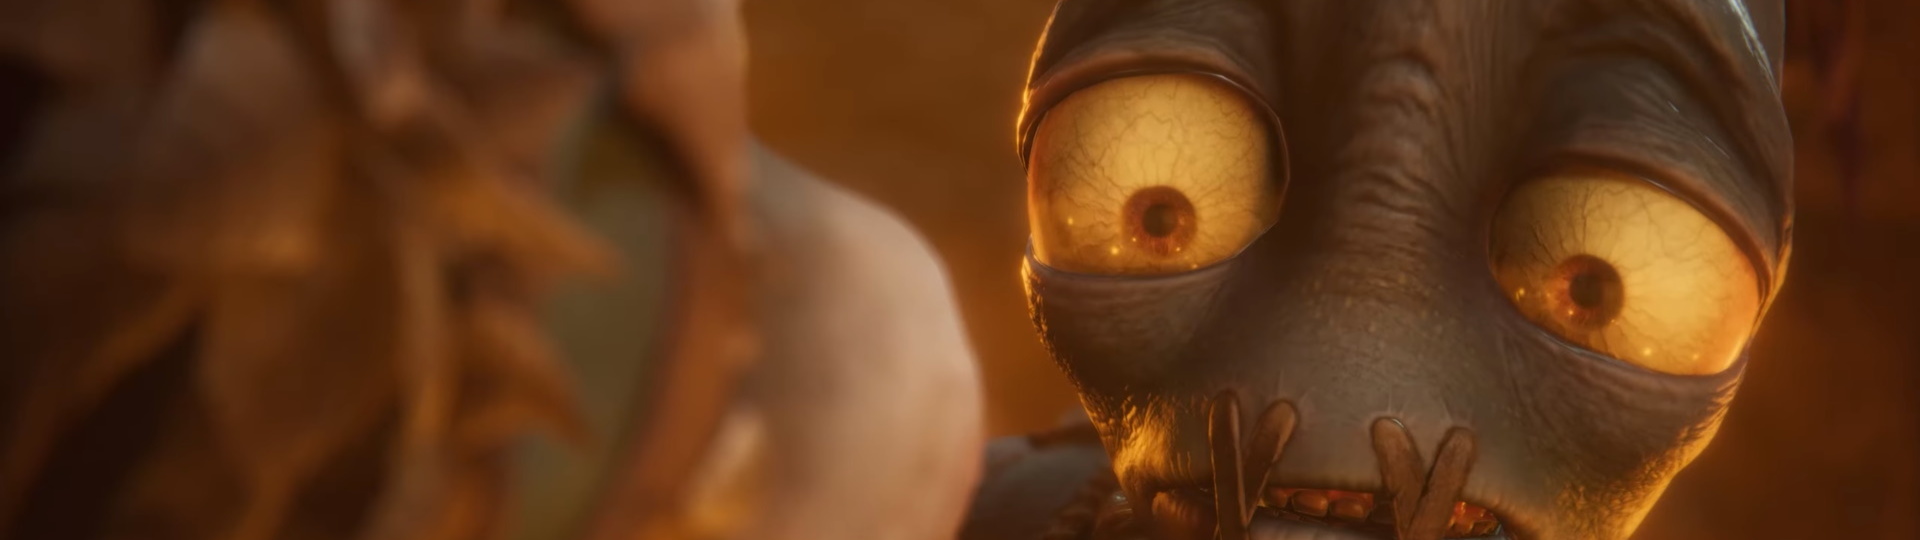 Oddworld: Soulstorm vyjde na jaře pro PS4 i PS5 | Videa